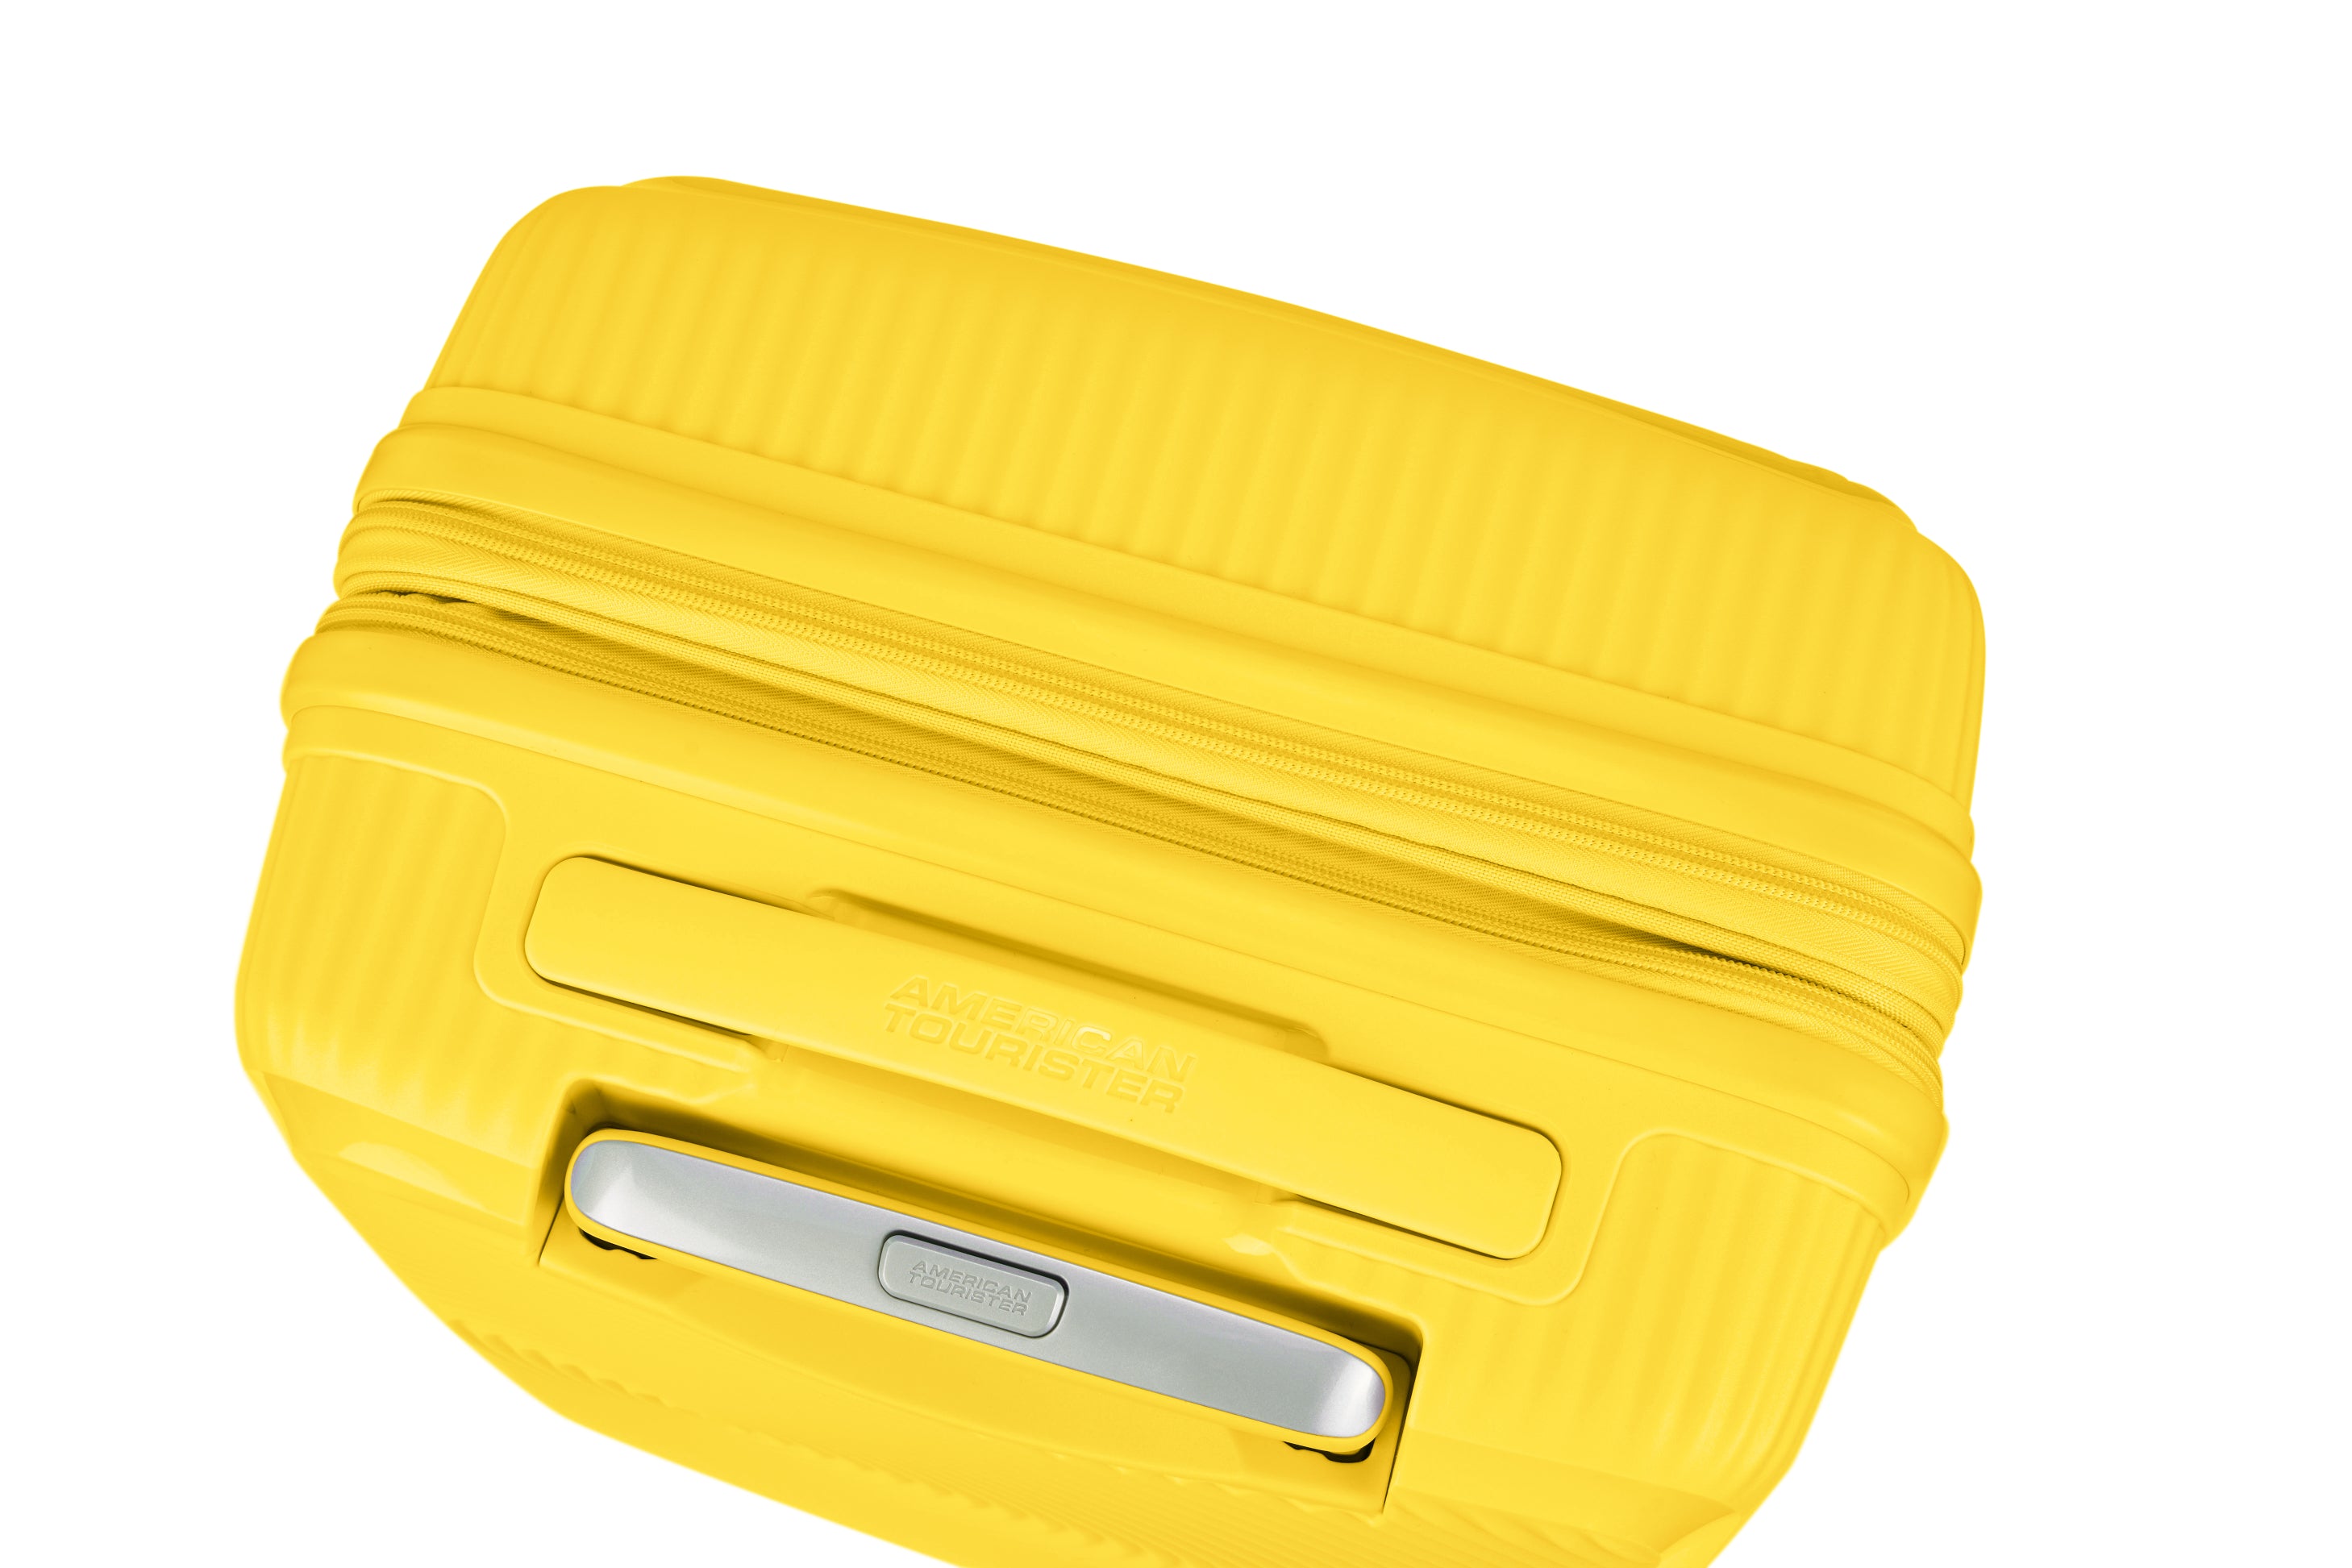 American Tourister - Curio 2.0 69cm Medium Suitcase - Golden Yellow-7